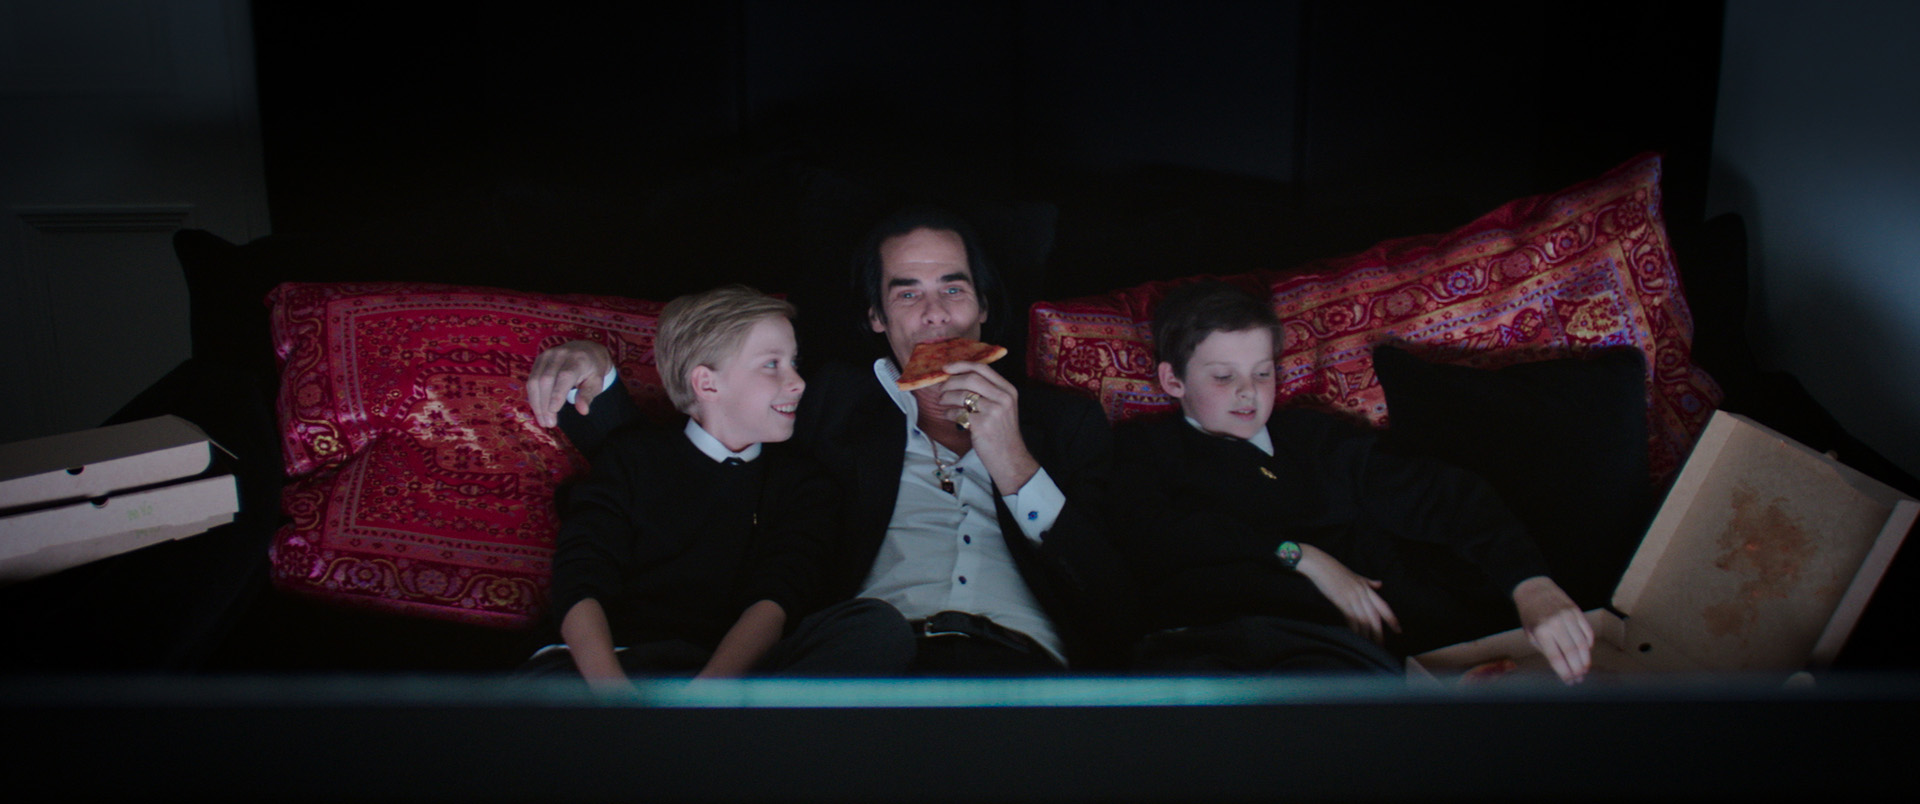 نیک کیو و پسرانش در حال خوردن پیتزا و تماشای تلویزیون در مستند 20000 Days